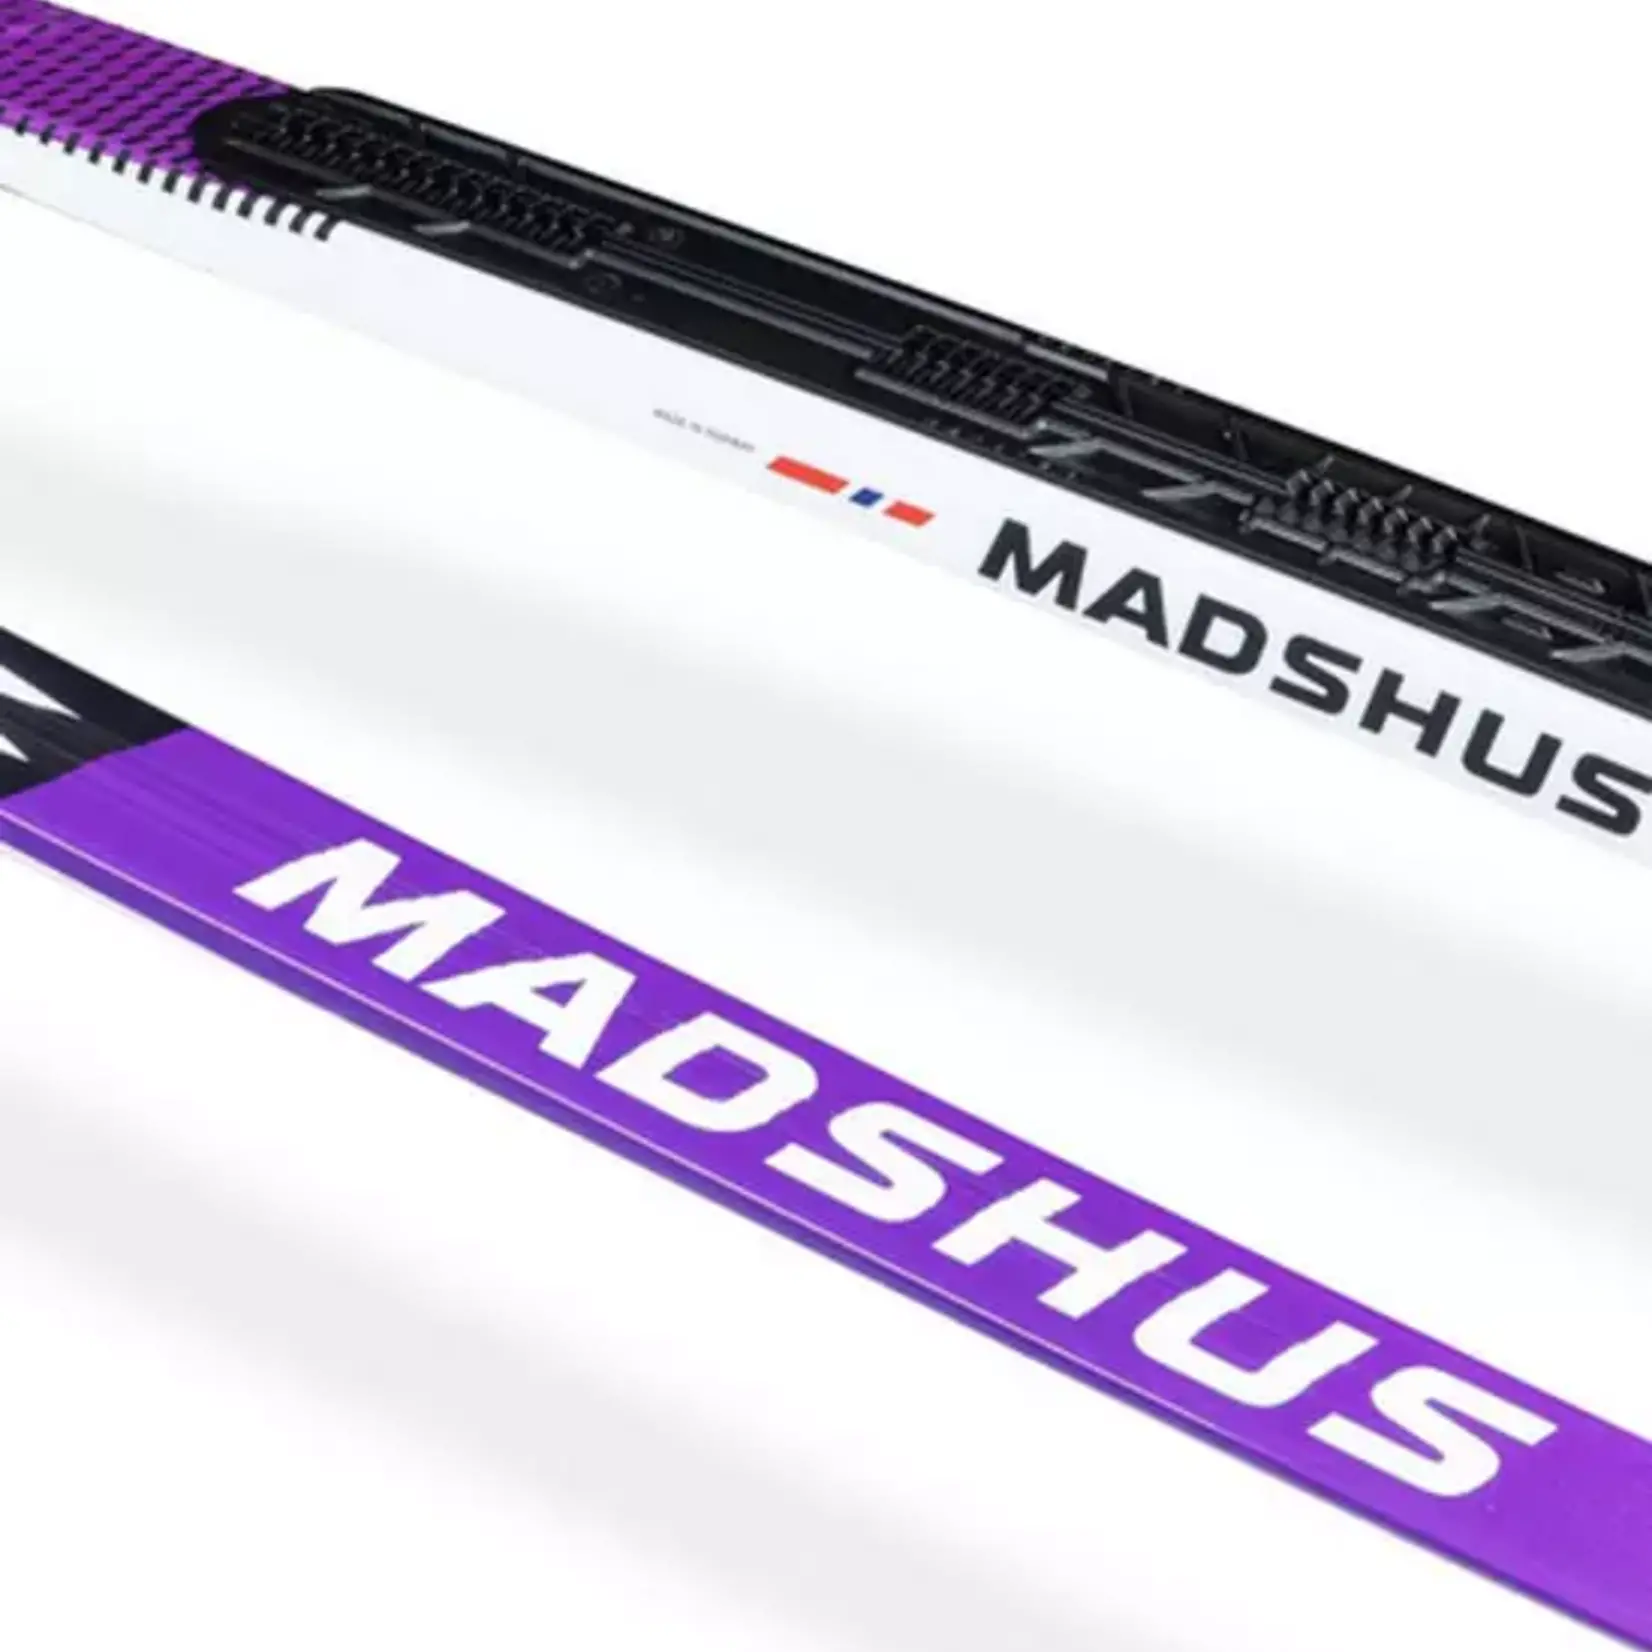 Madshus Madshus Redline skate LTD